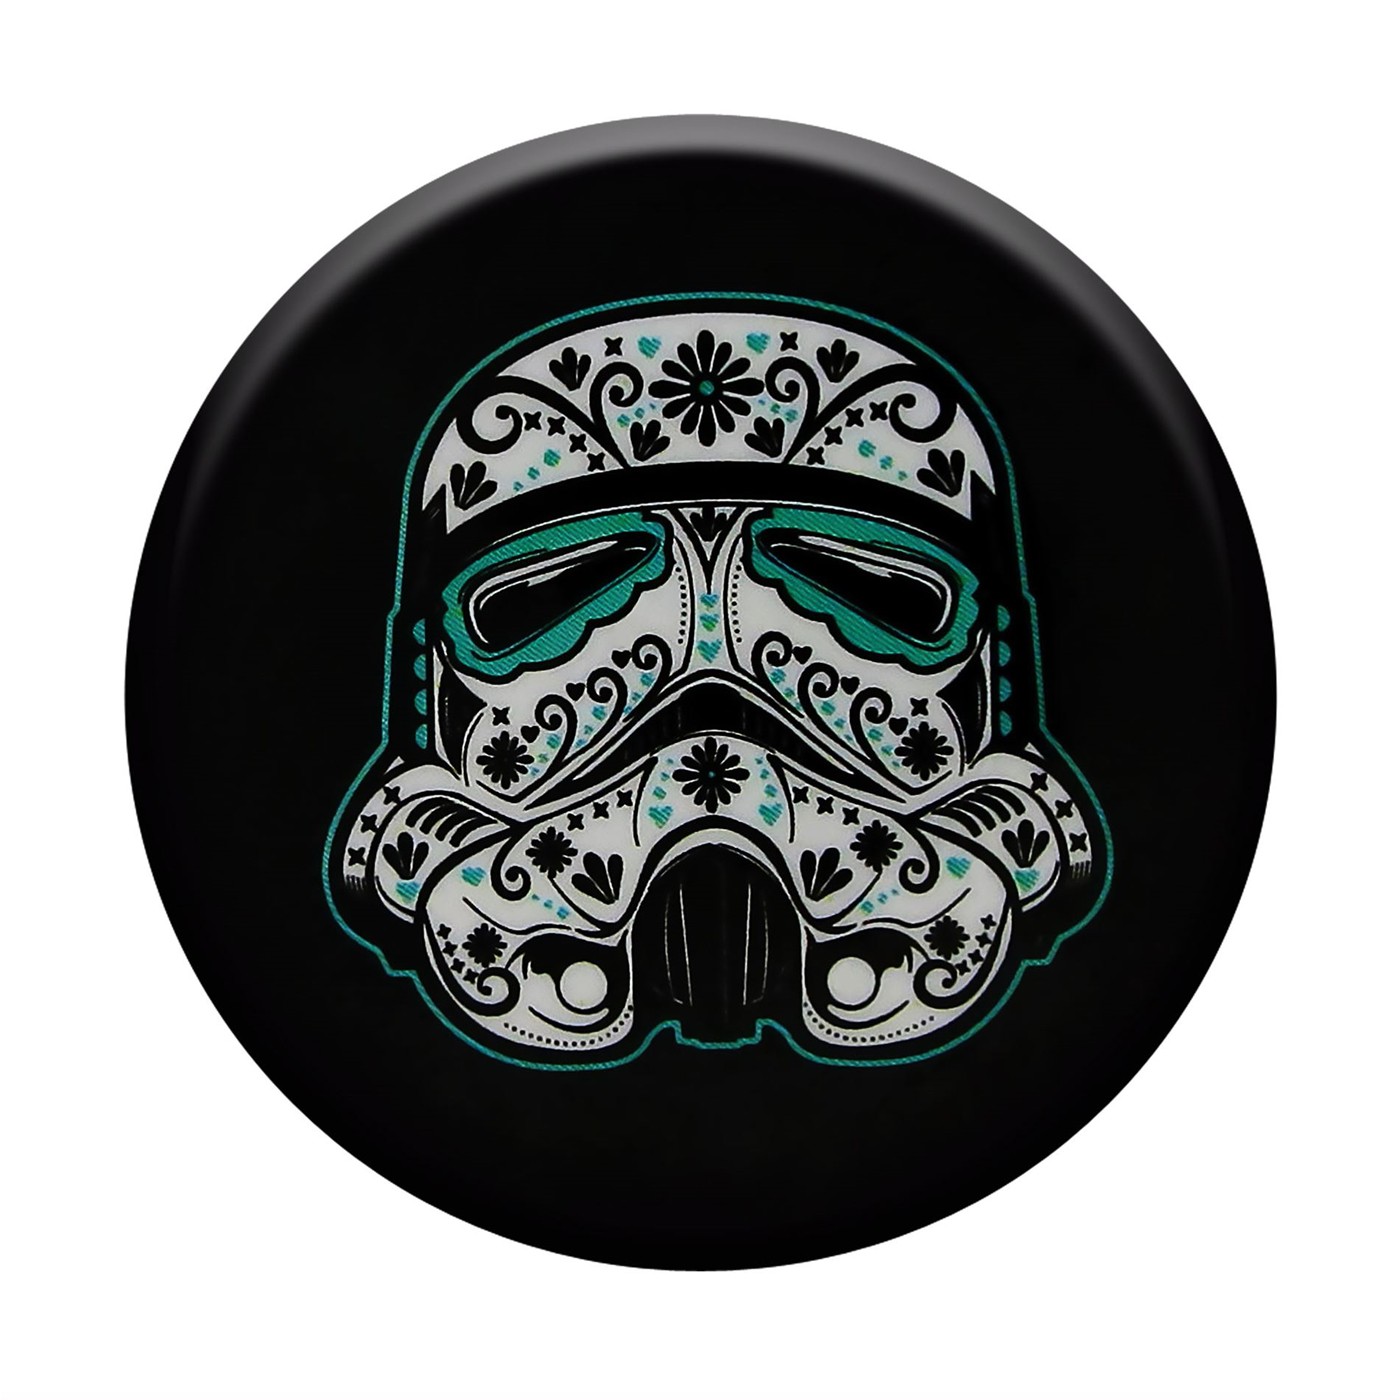 Star Wars Trooper Sugar Helmet Button